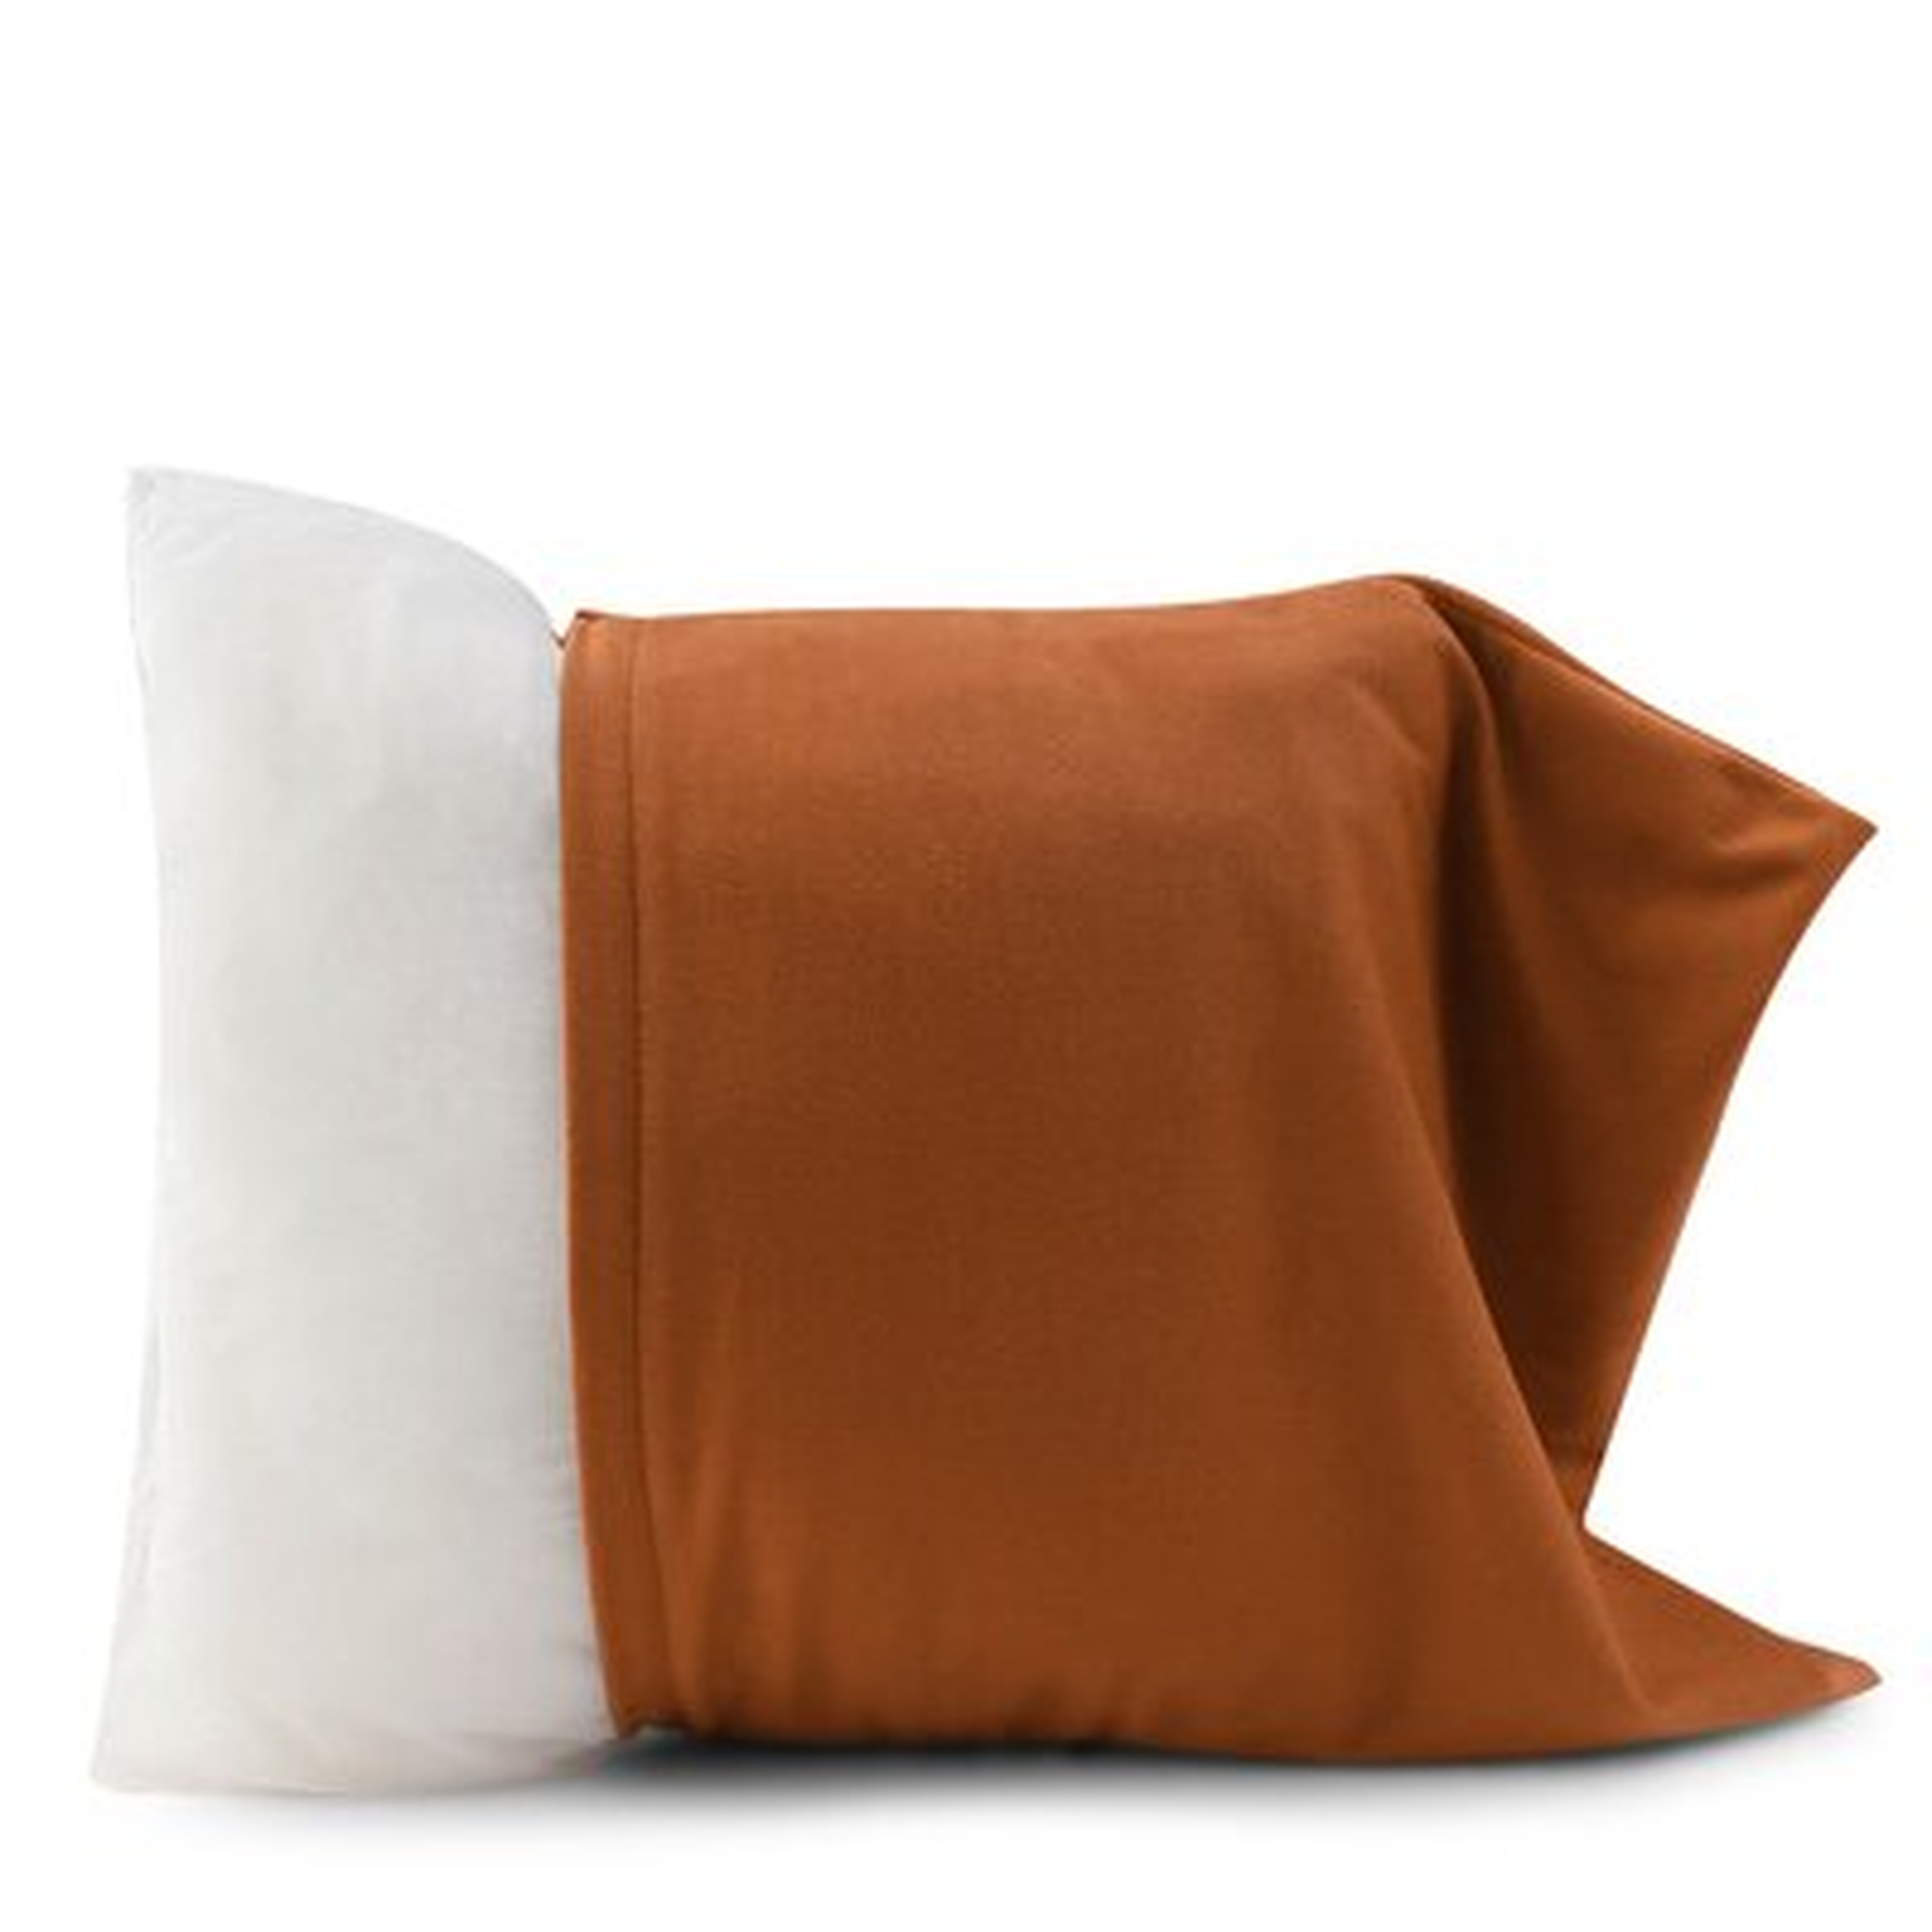 Square Velvet Pillow Cover For Car Sofa Living Room Bedroom,Brown 18*18' - Wayfair